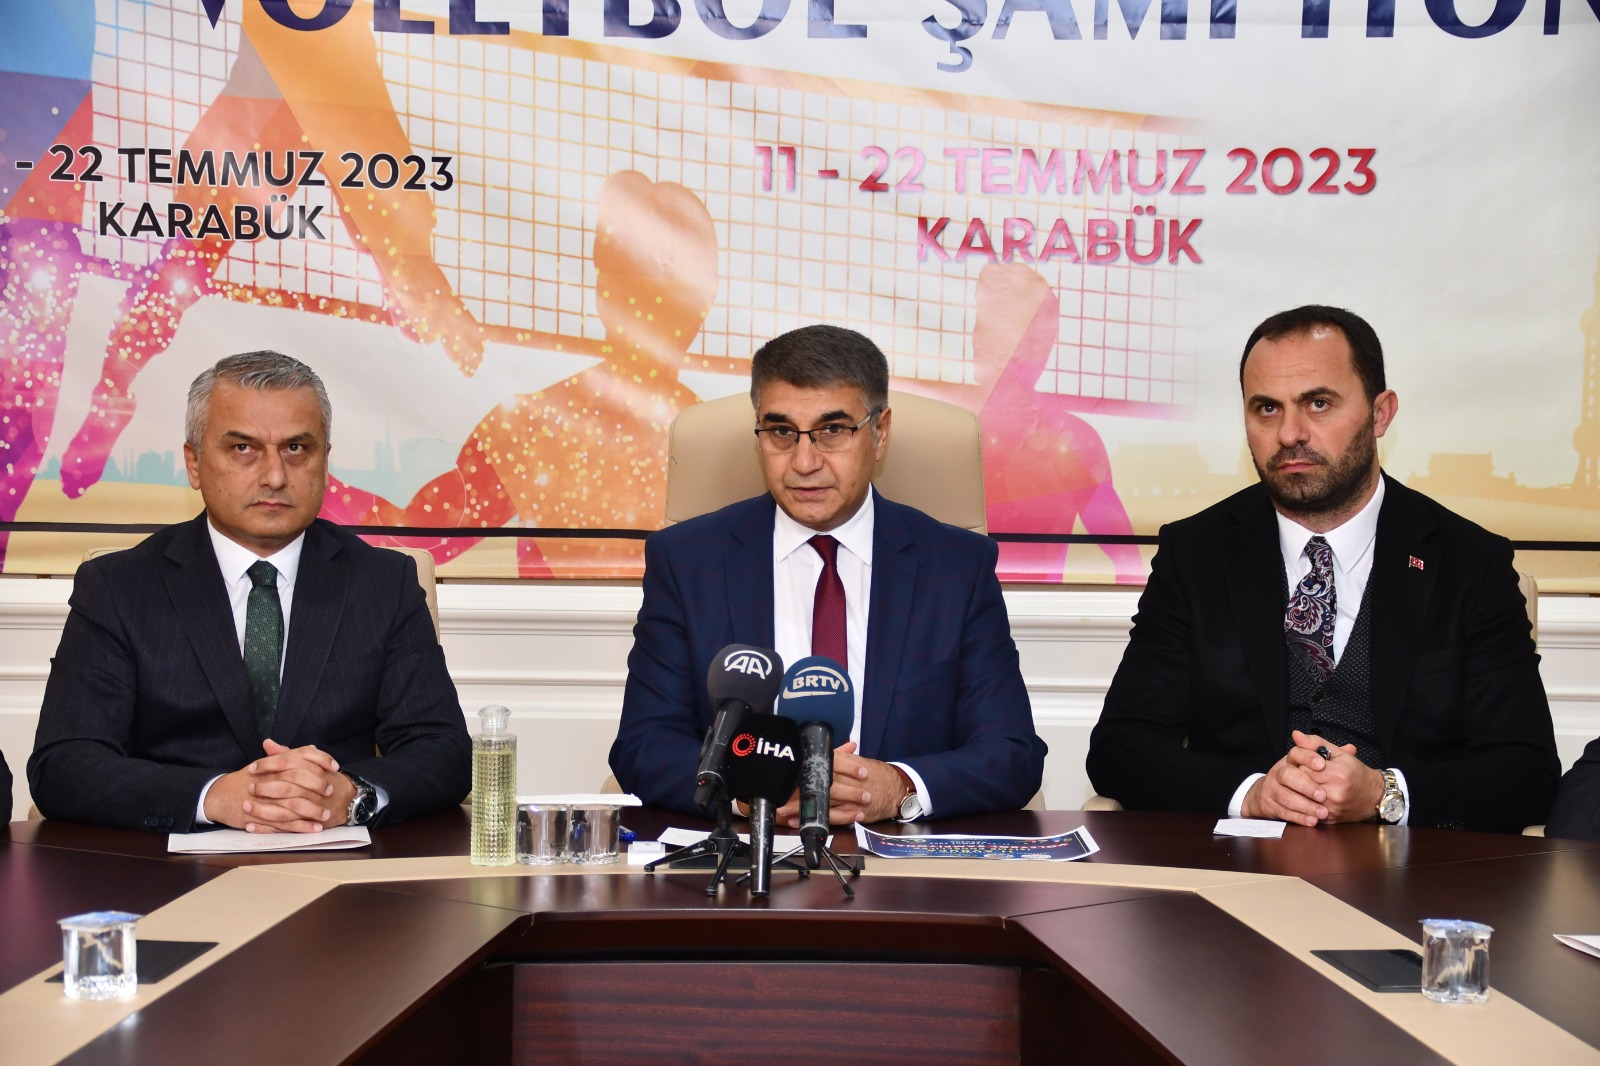 “Spor Şehri Karabük” 11. Avrupa İşitme Engelliler Voleybol Şampiyonasına Ev Sahipliği Yapacak.